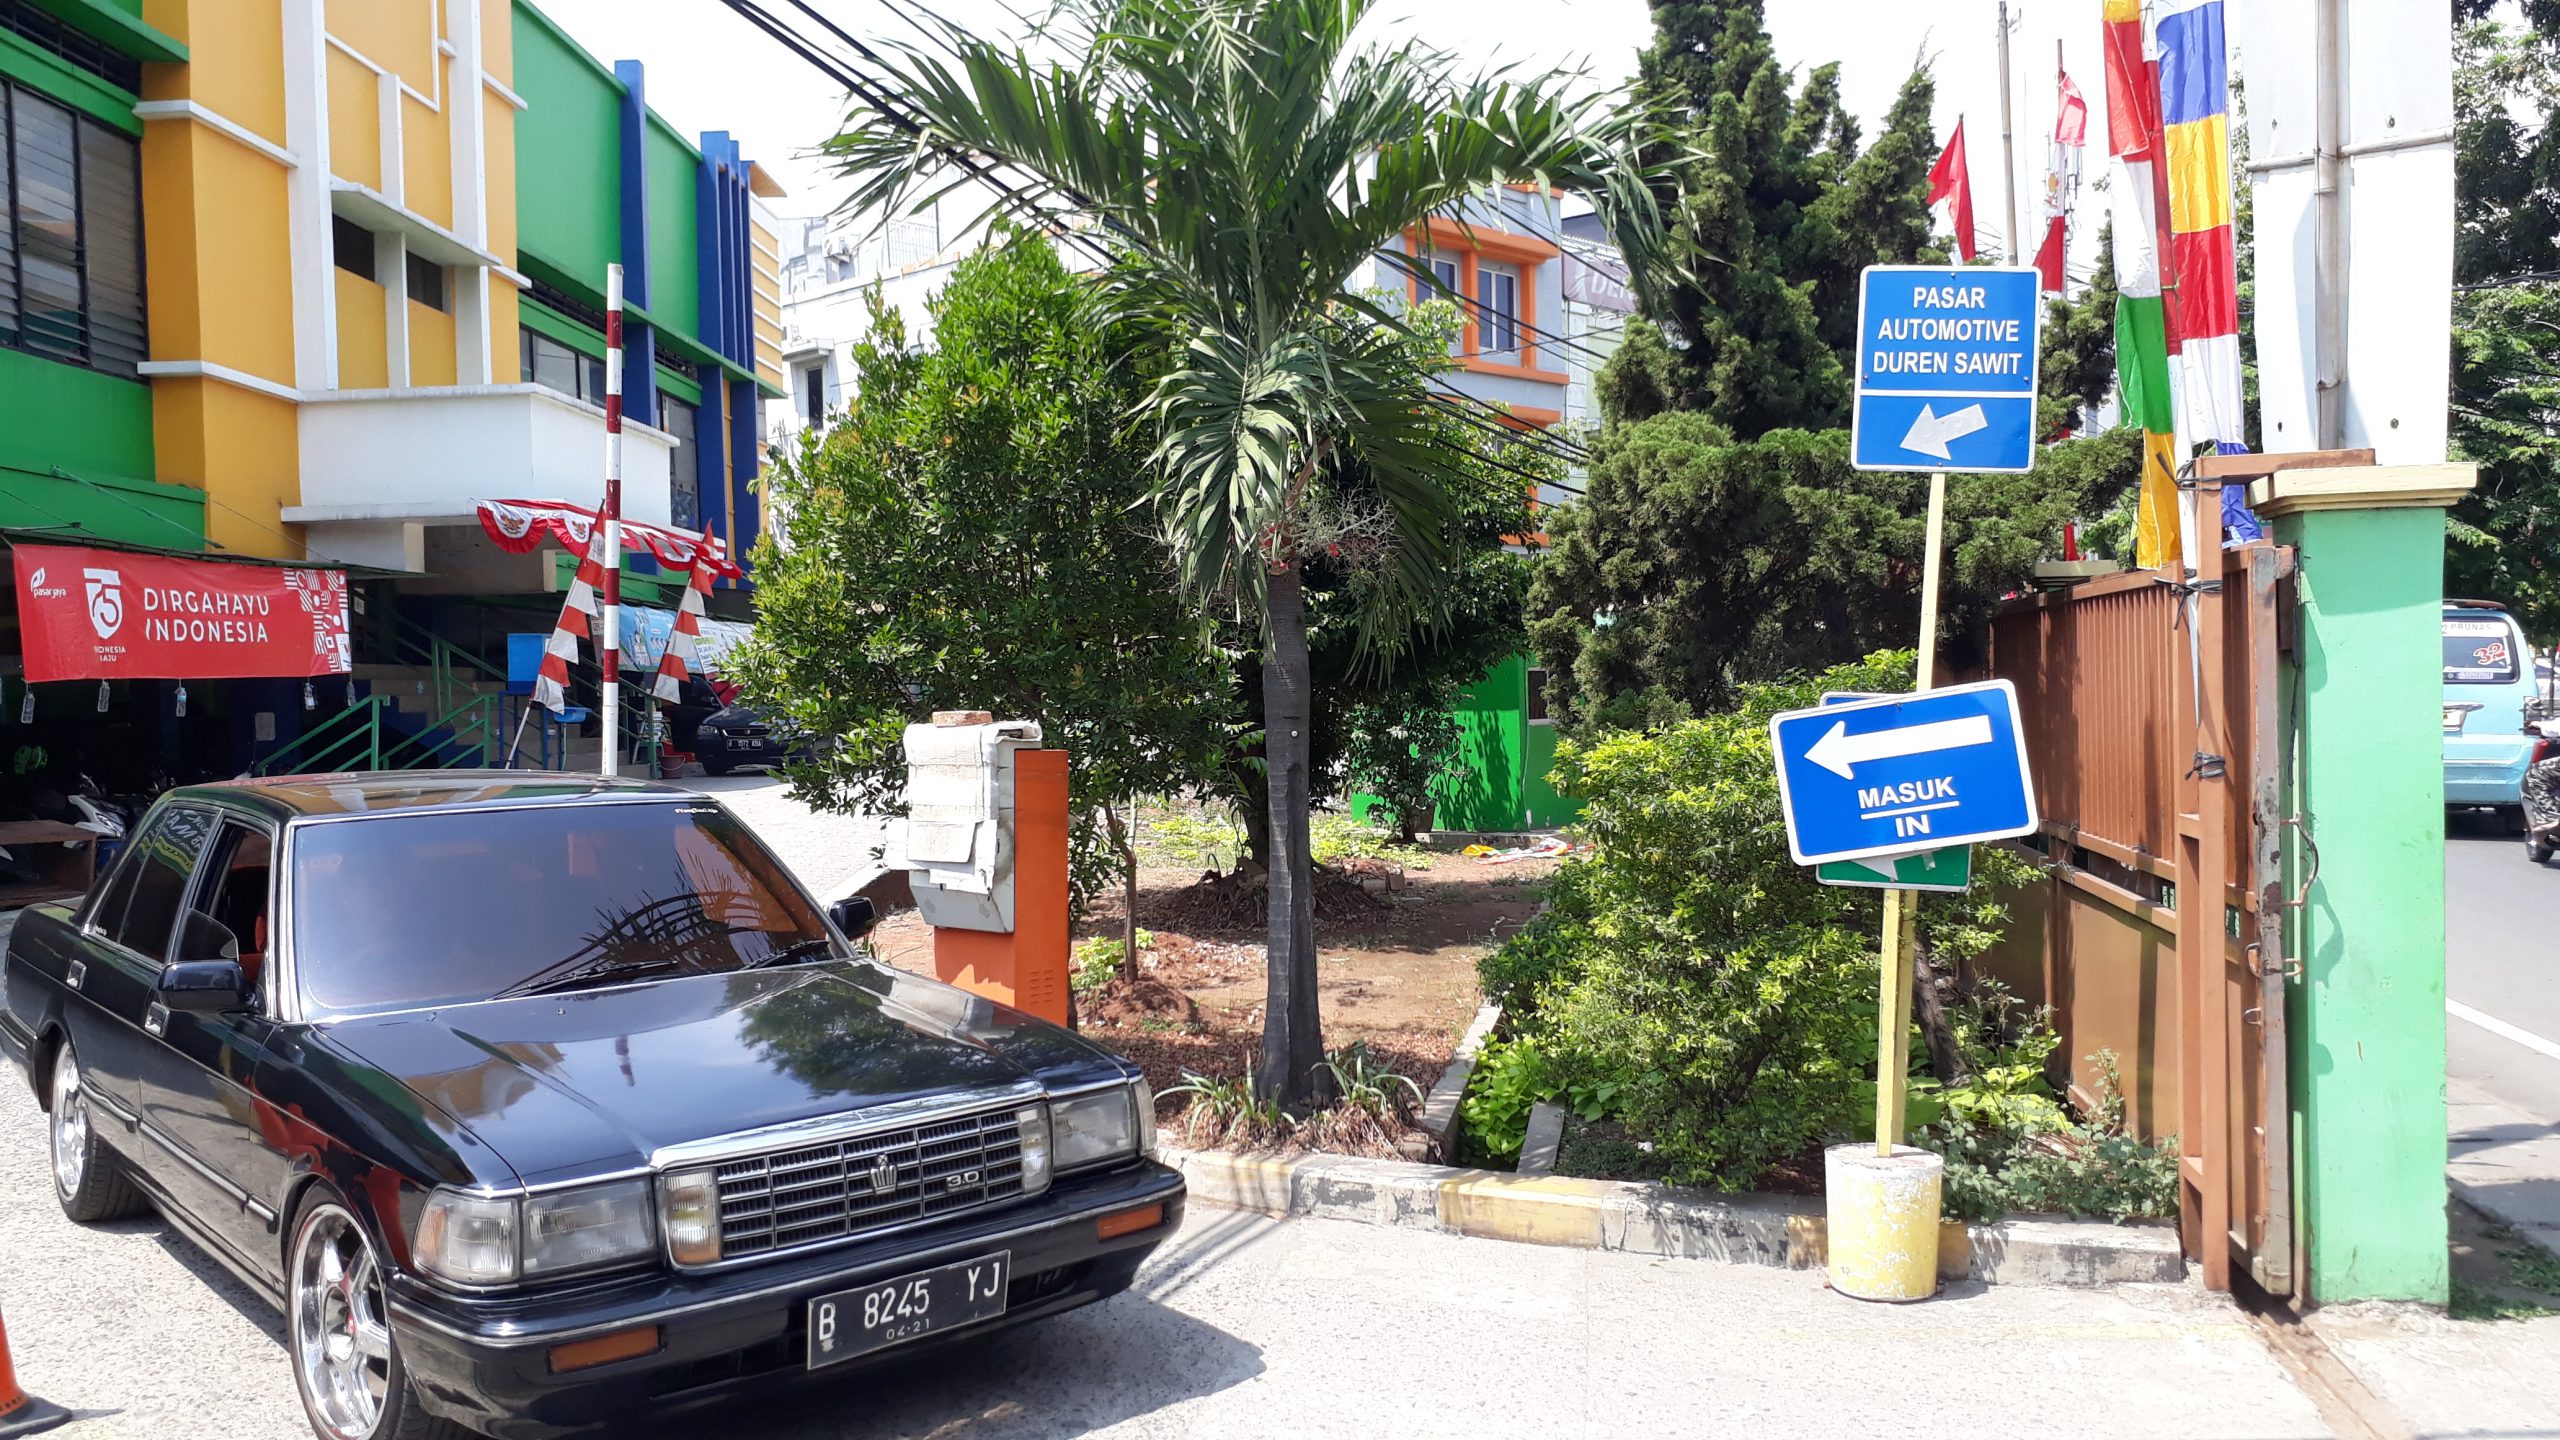 Pasar Otomotif Duren Sawit Pusat Onderdil dan Asesoris Murah Lengkap